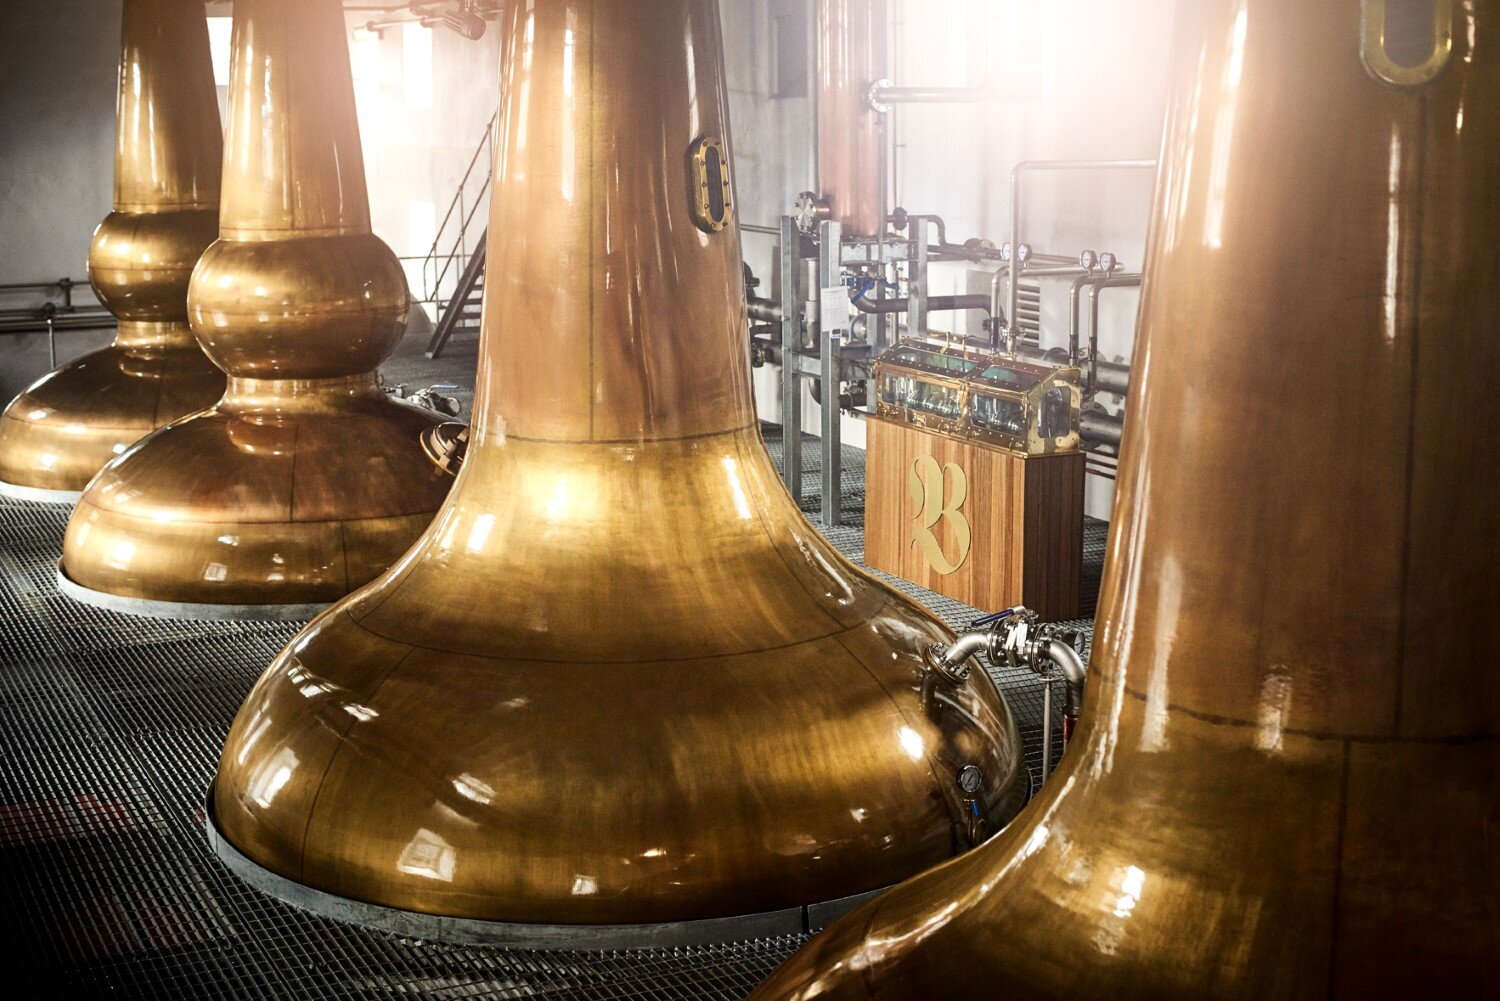 bladnoch-distillery-8.jpg